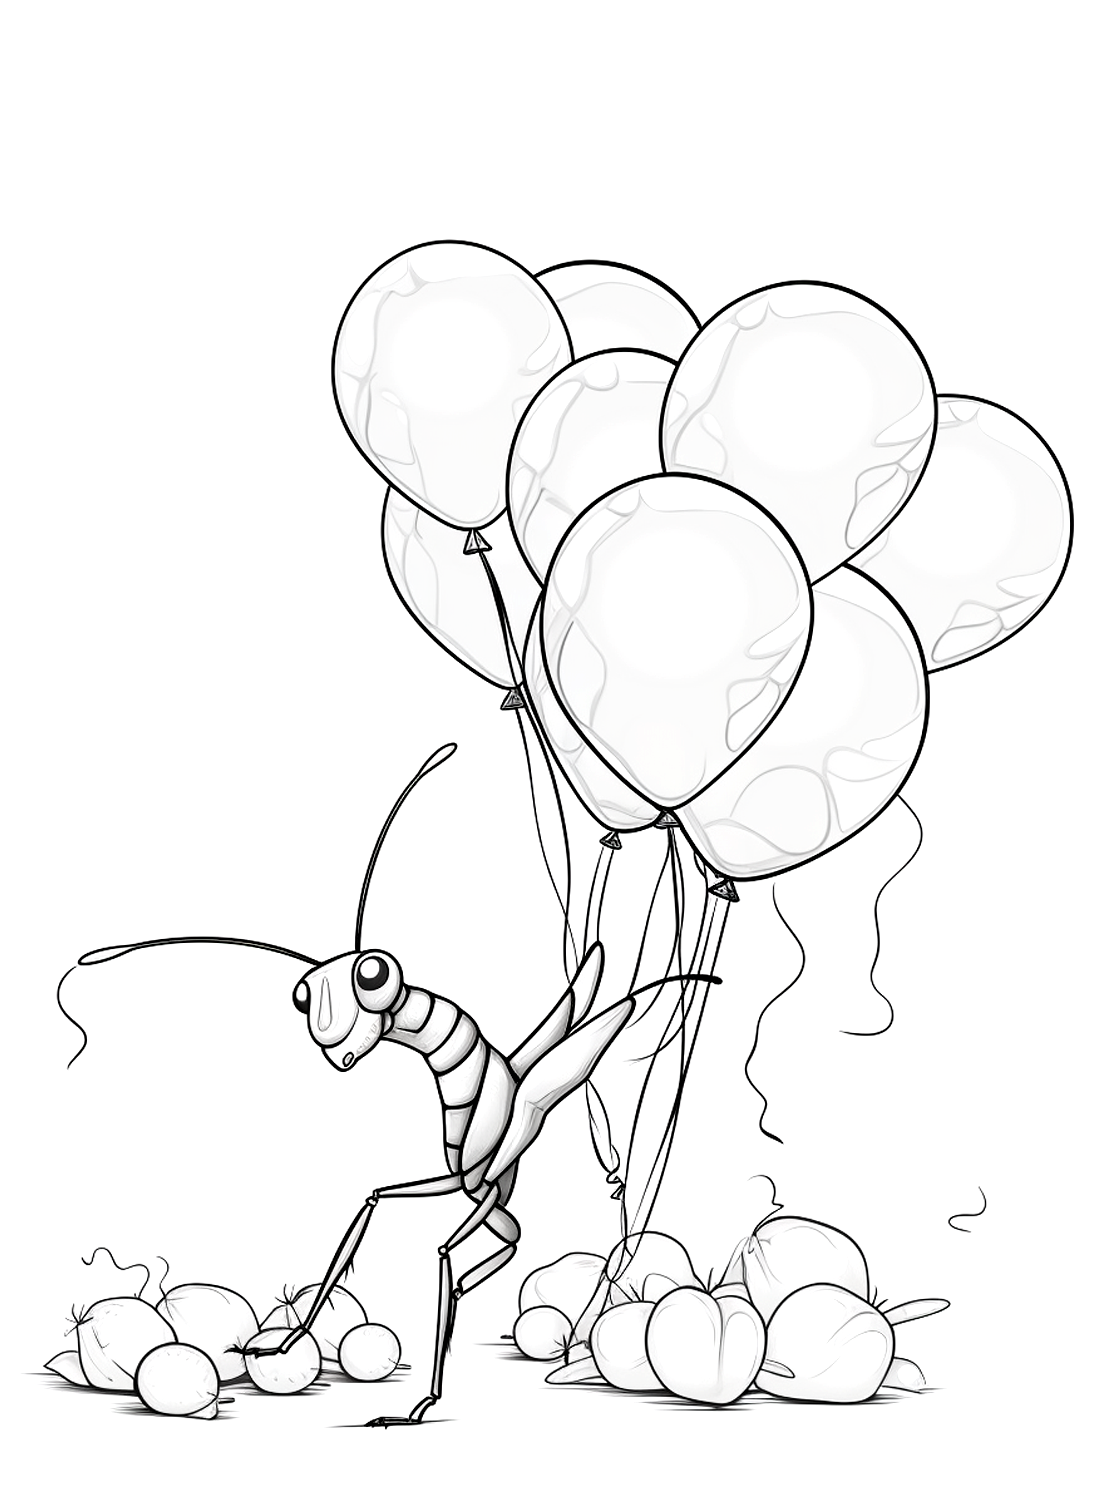 螳螂从螳螂身上夺走了许多气球